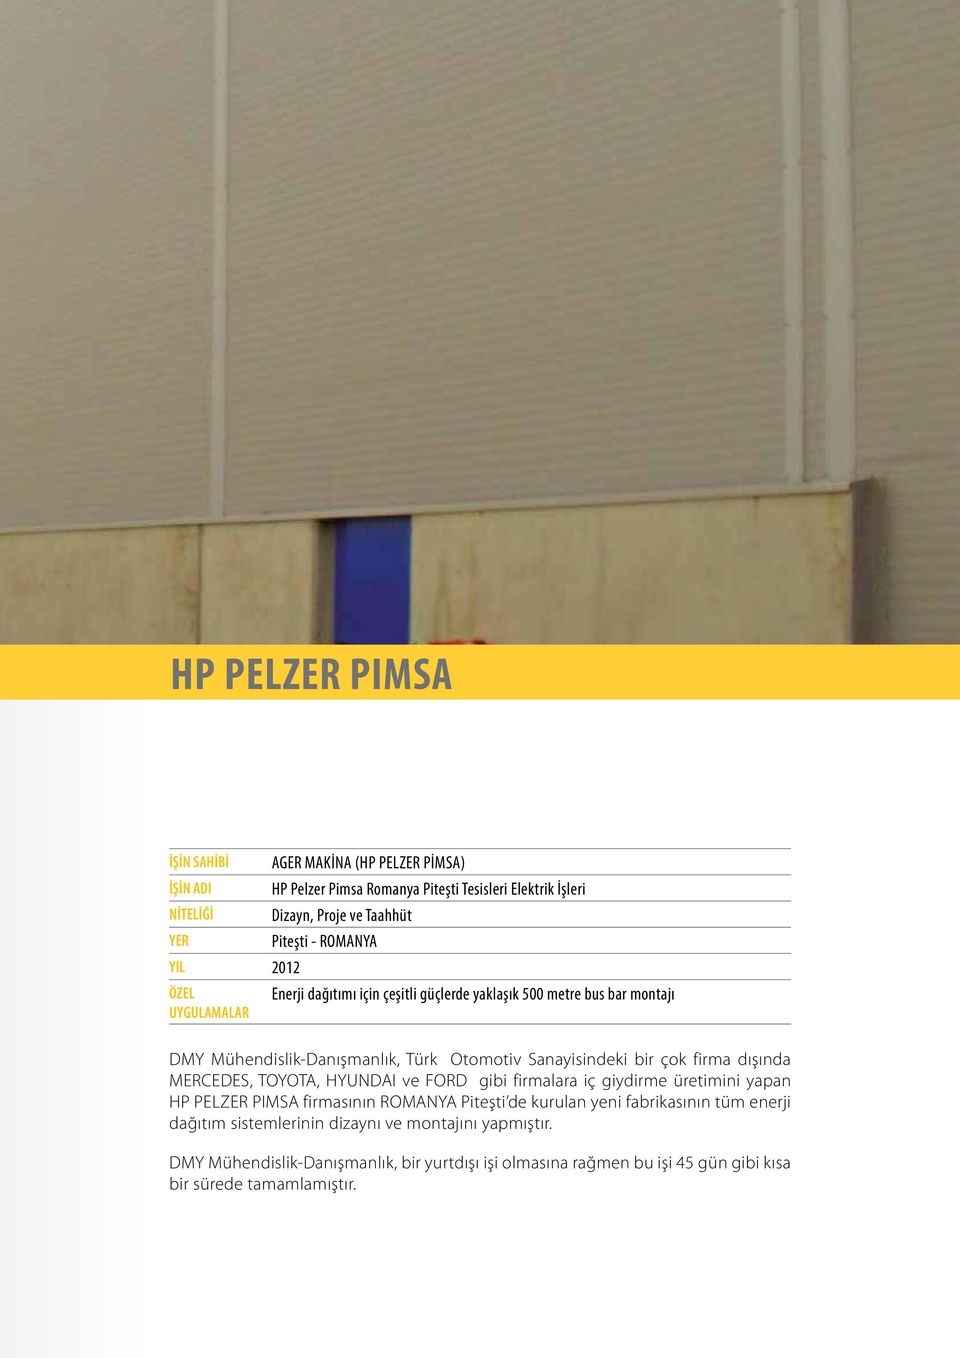 çok firma dışında MERCEDES, TOYOTA, HYUNDAI ve FORD gibi firmalara iç giydirme üretimini yapan HP PELZER PIMSA firmasının ROMANYA Piteşti de kurulan yeni fabrikasının tüm